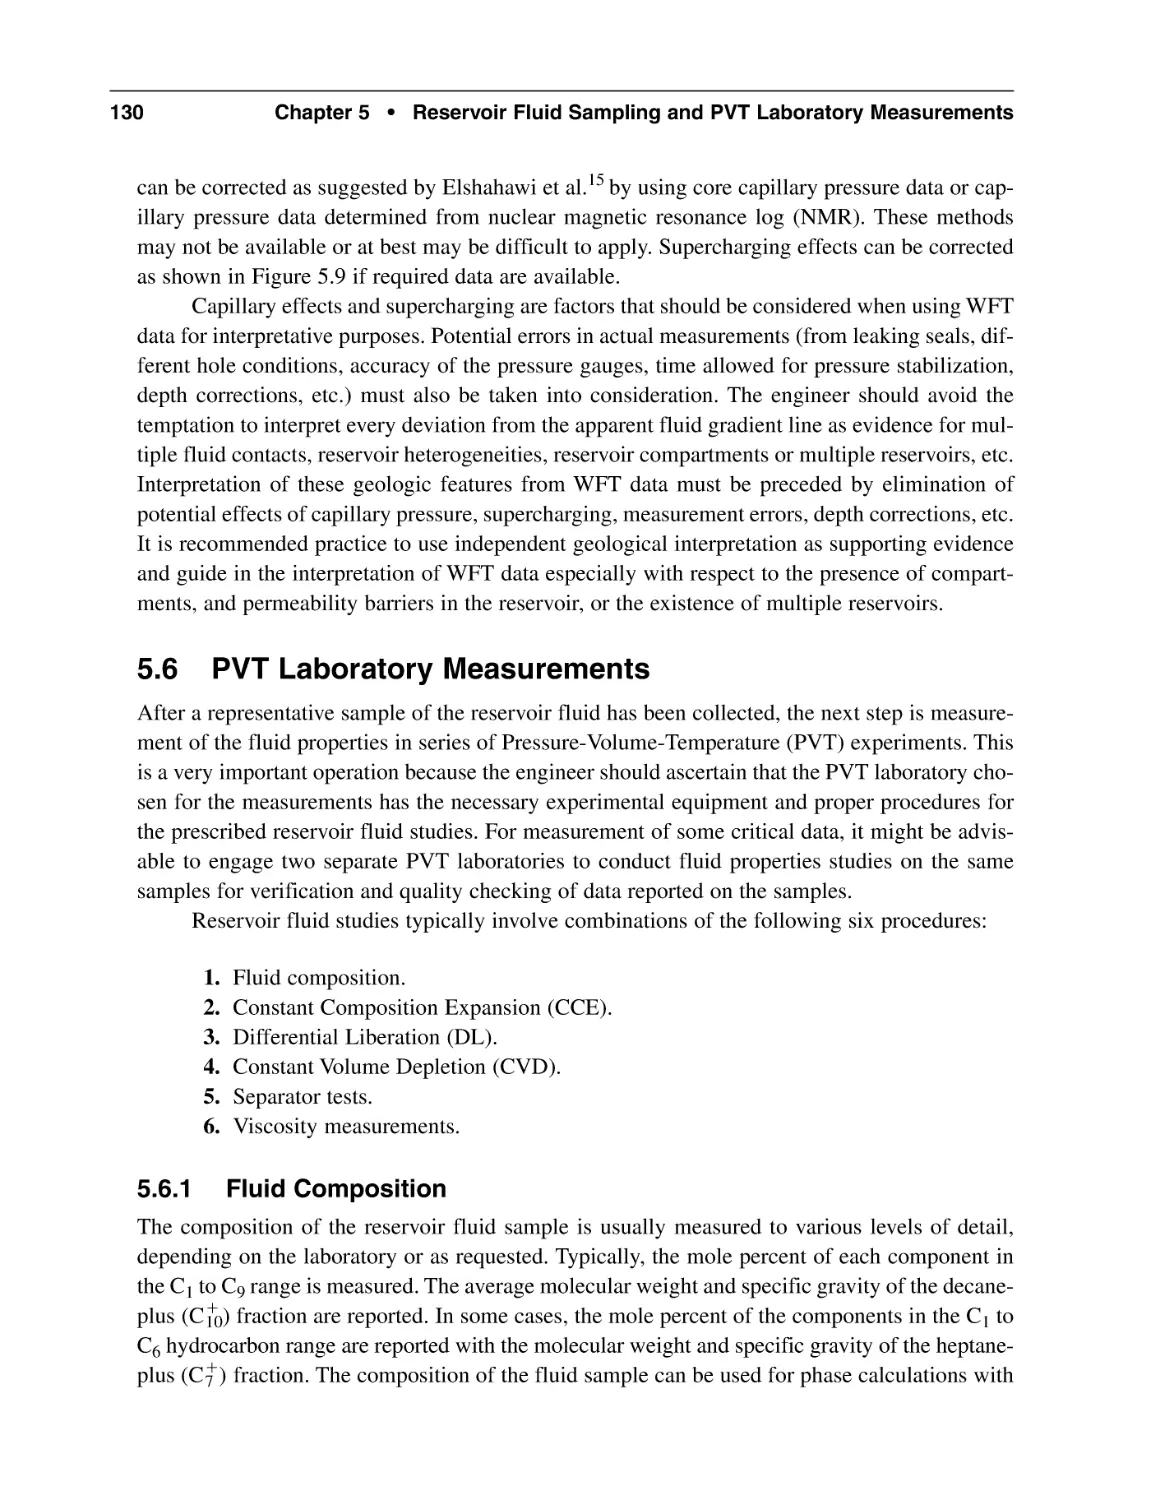 5.6 PVT Laboratory Measurements
5.6.1 Fluid Composition